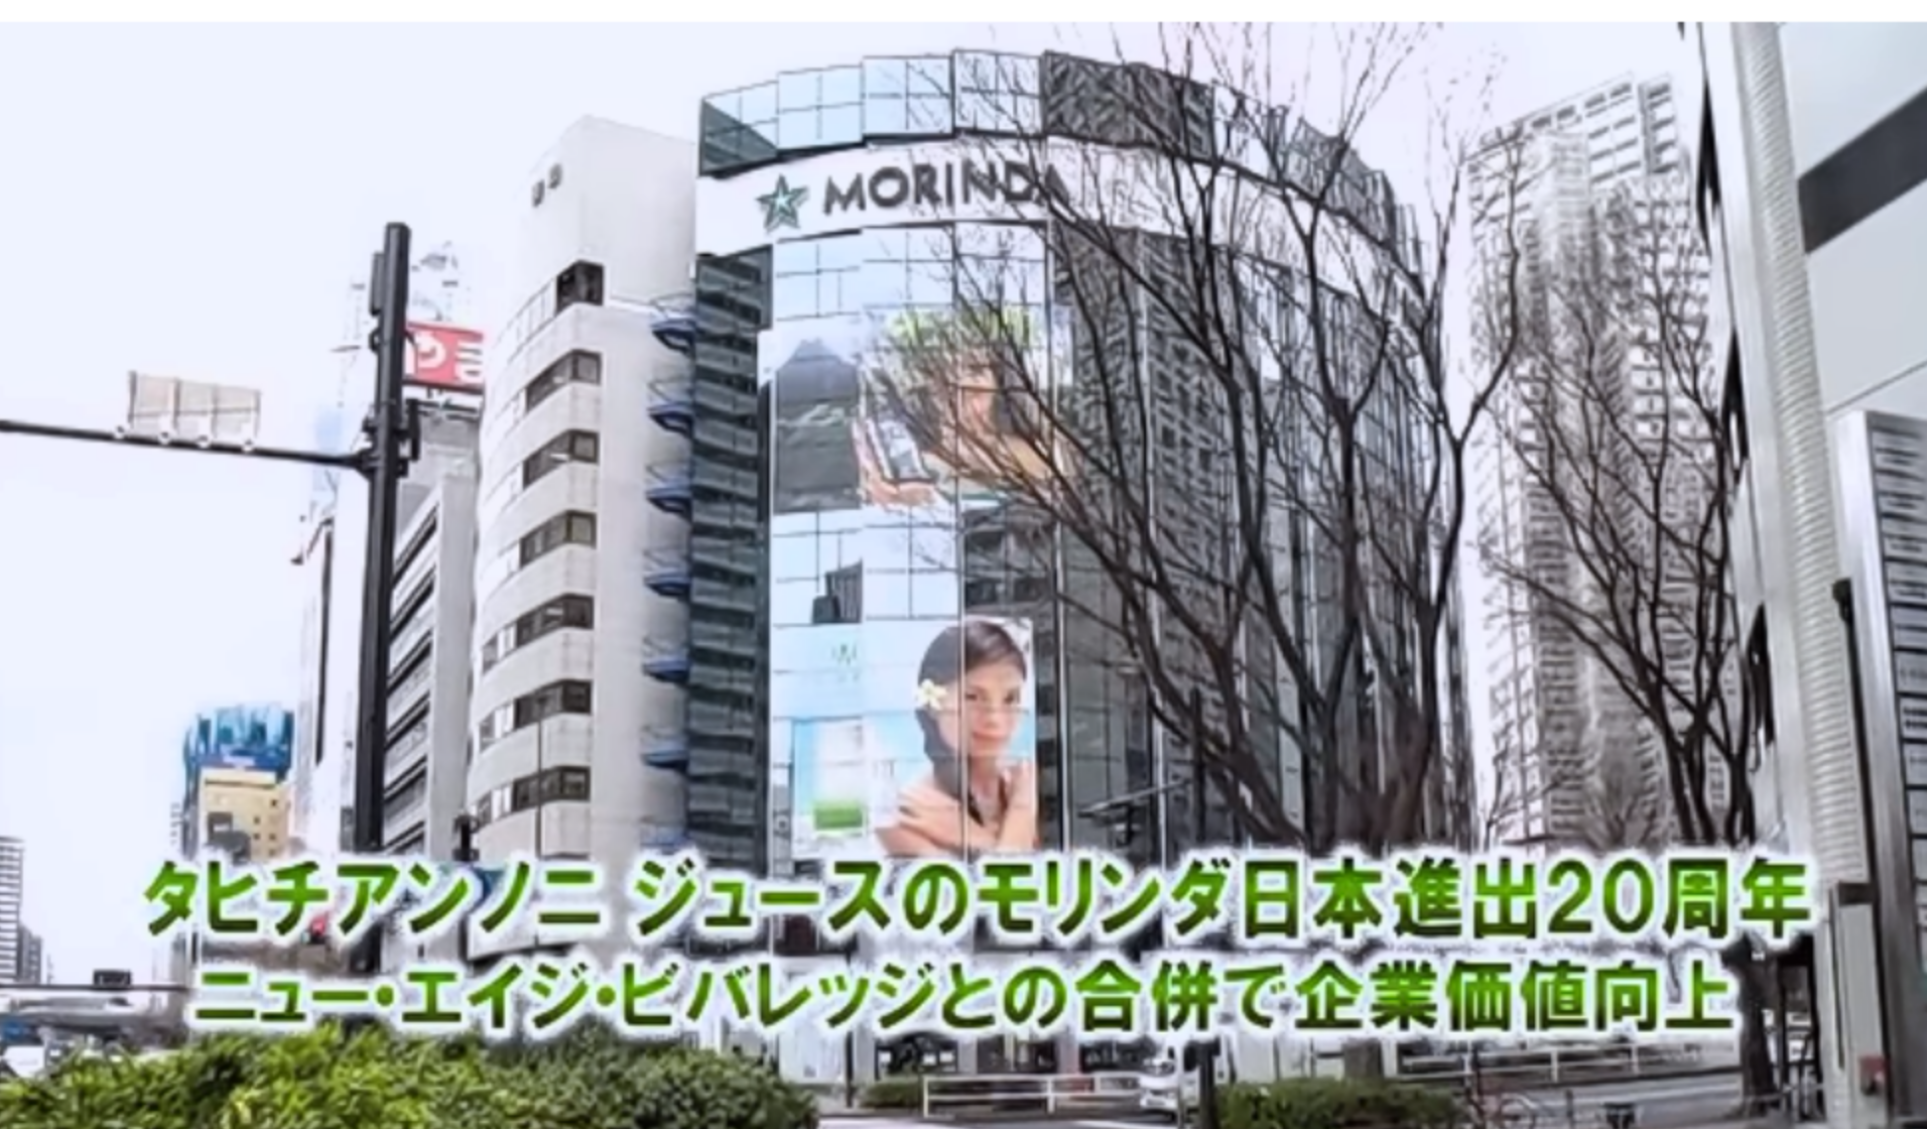 【共同通信社のニュースサイトにて、動画「モリンダ日本進出20周年」配信中】